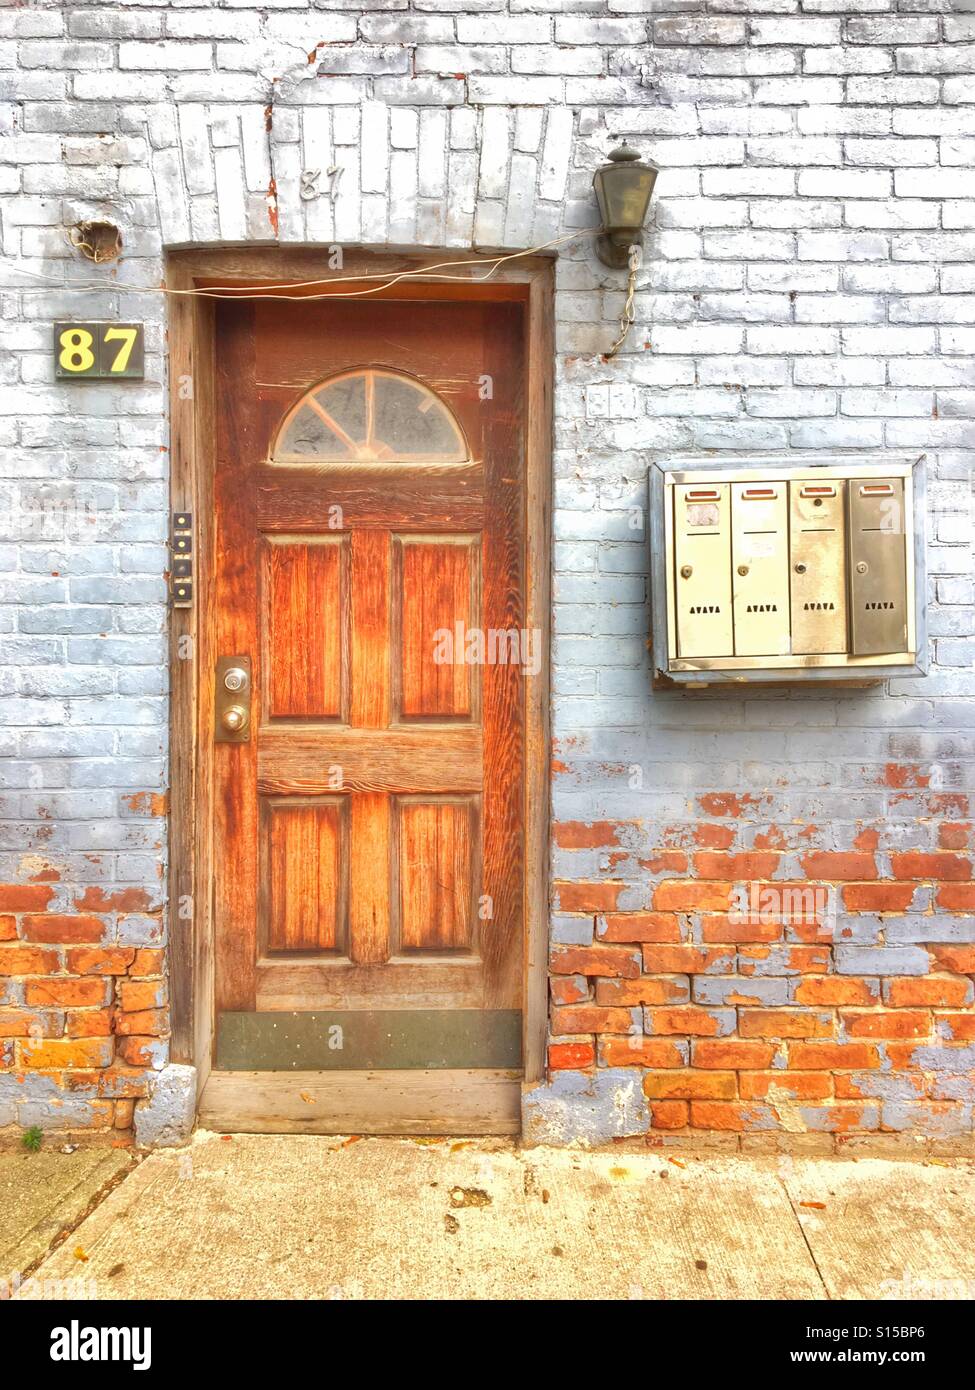 Vintage ancienne porte en bois avec mur de brique. Porte d'entrée d'un immeuble ancien Banque D'Images